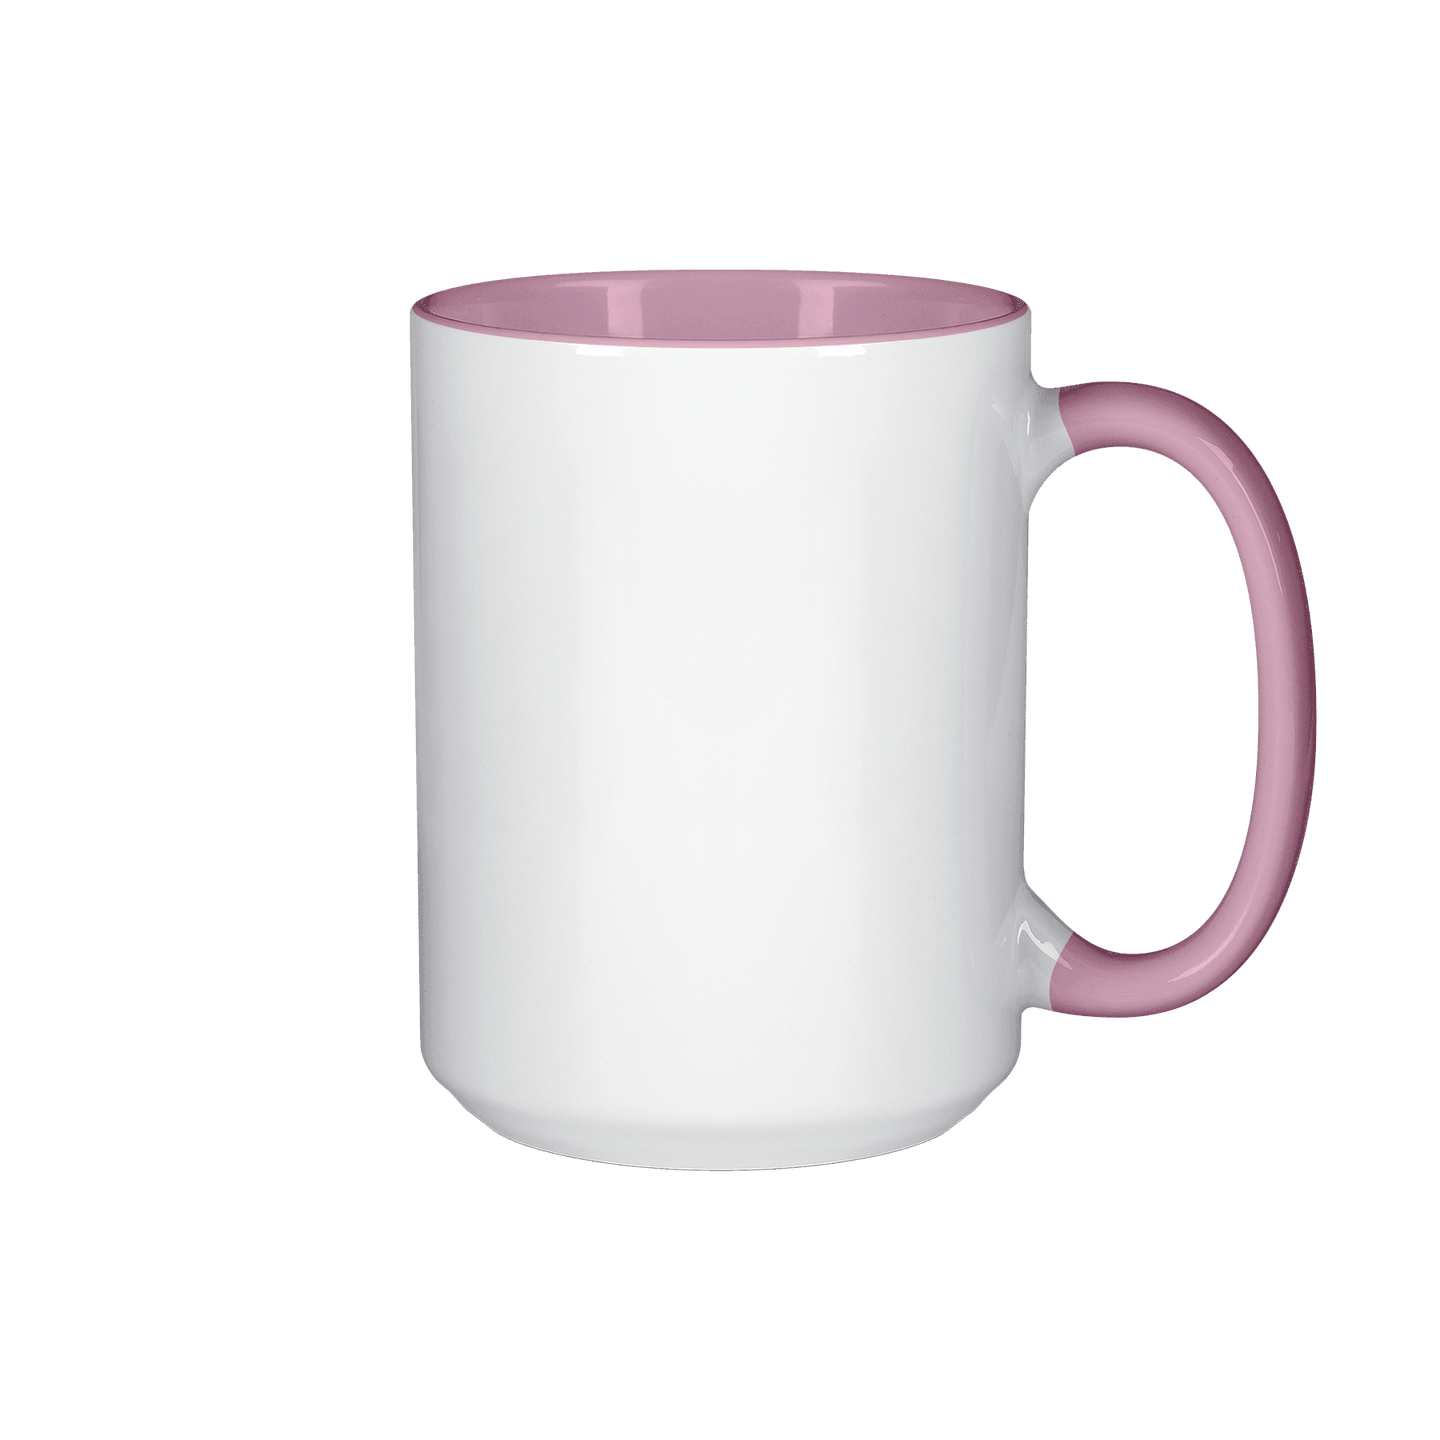 15 oz. El Grande Pink Inside & Handle Sublimation Mugs - Set of 6